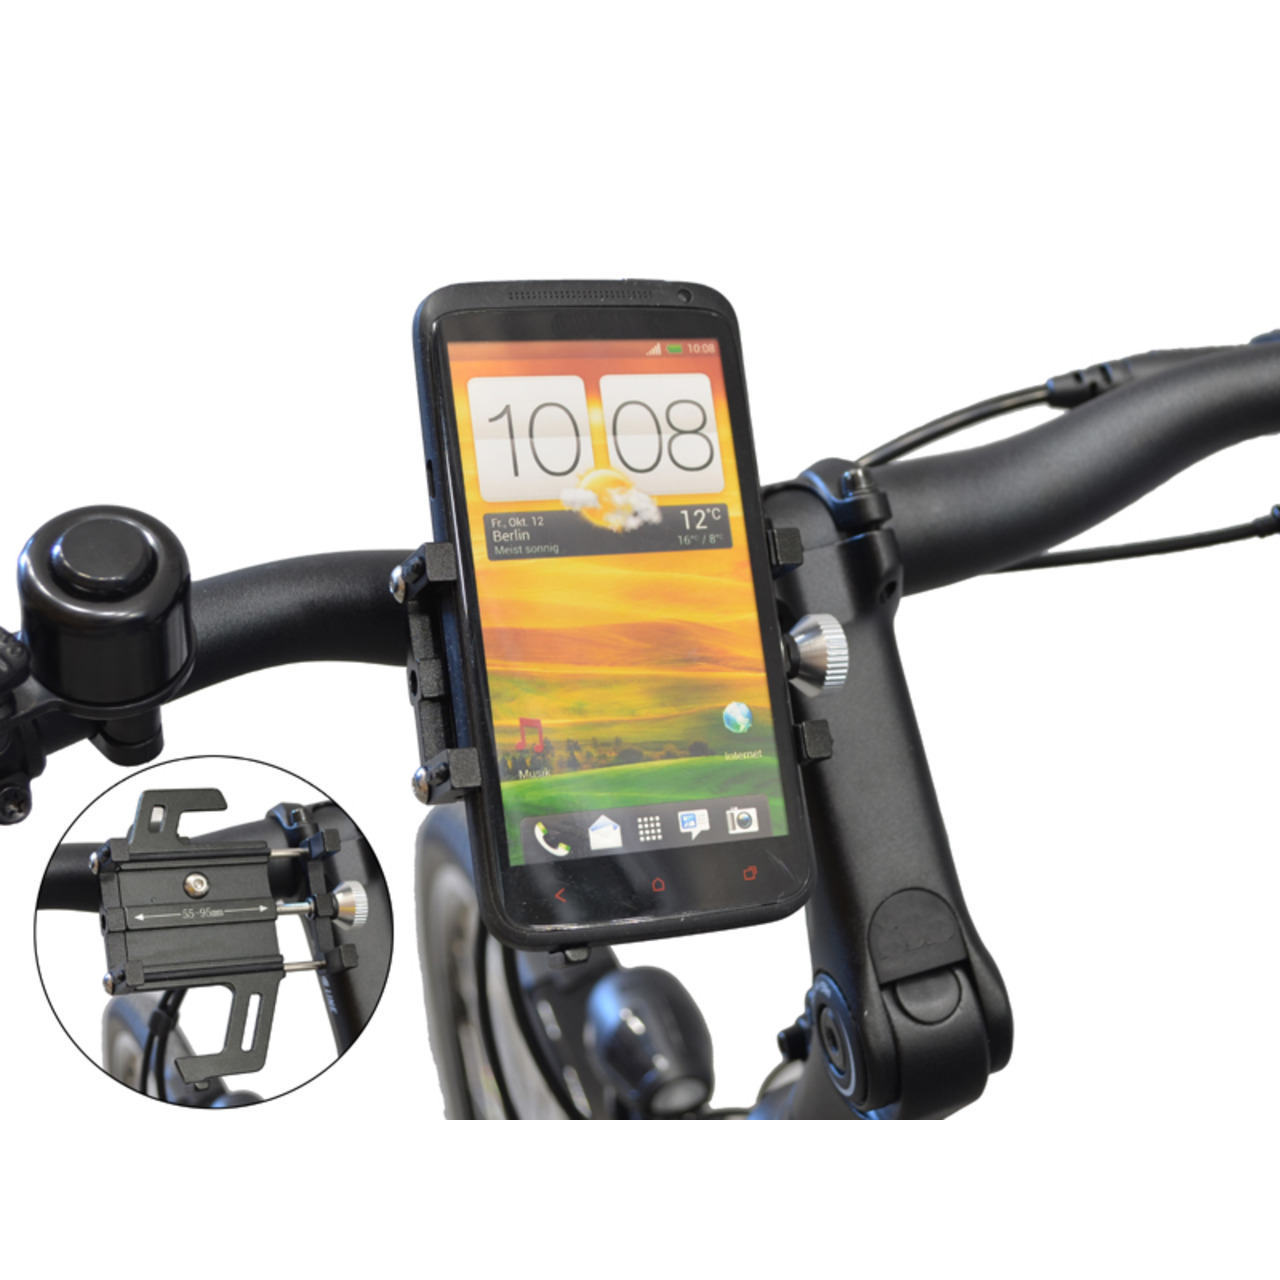 Filmer Fahrrad-Smartphonehalterung 49800- 55 - 95 mm Smartphone-Breite- mit Stossdämpfung- Aluminium